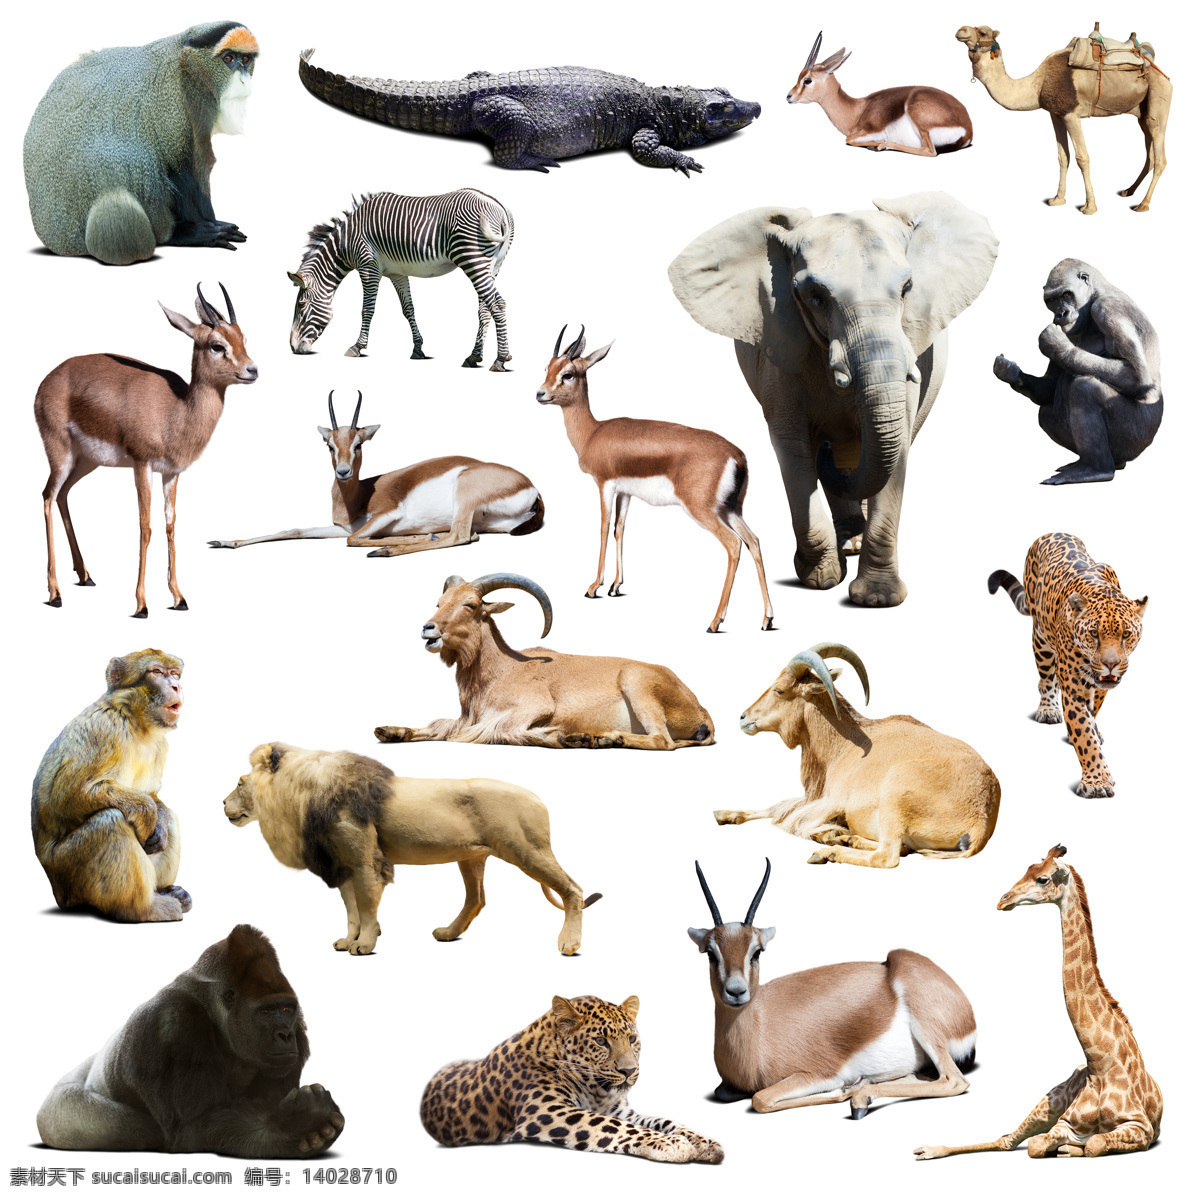 种 野生动物 高清 鳄鱼 骆驼 猩猩 猴子 大象 豹子 长颈鹿 狮子 斑马 羚羊 热带动物 老虎 高清图片 白色